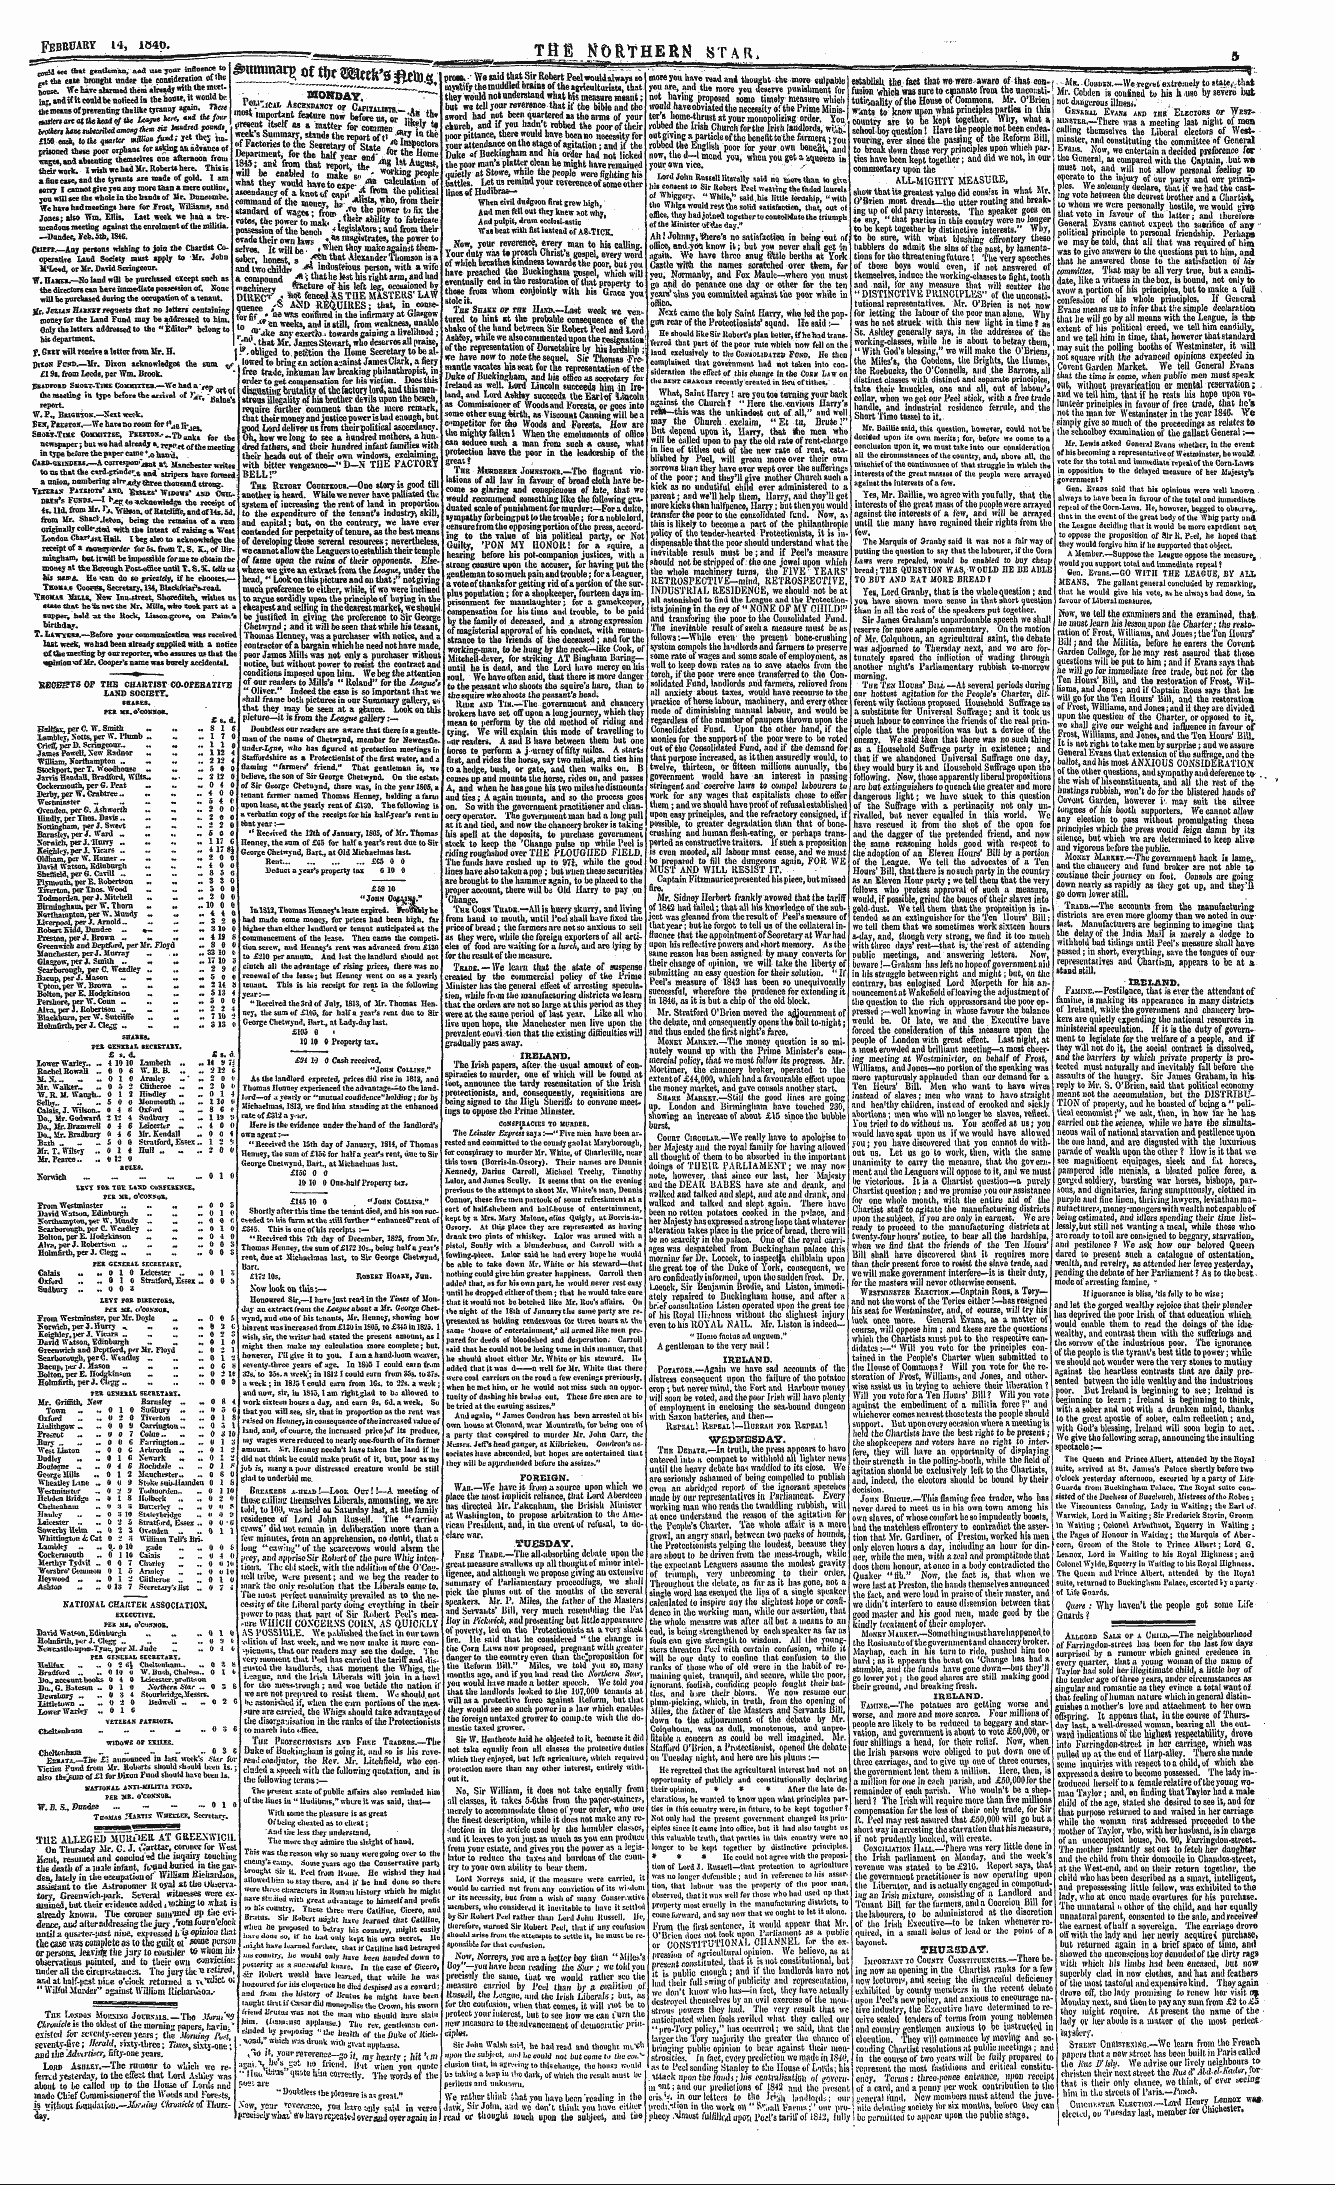 Northern Star (1837-1852): jS F Y, 3rd edition - Feb- Carv I4, Law. Tfie Northern Star. F...